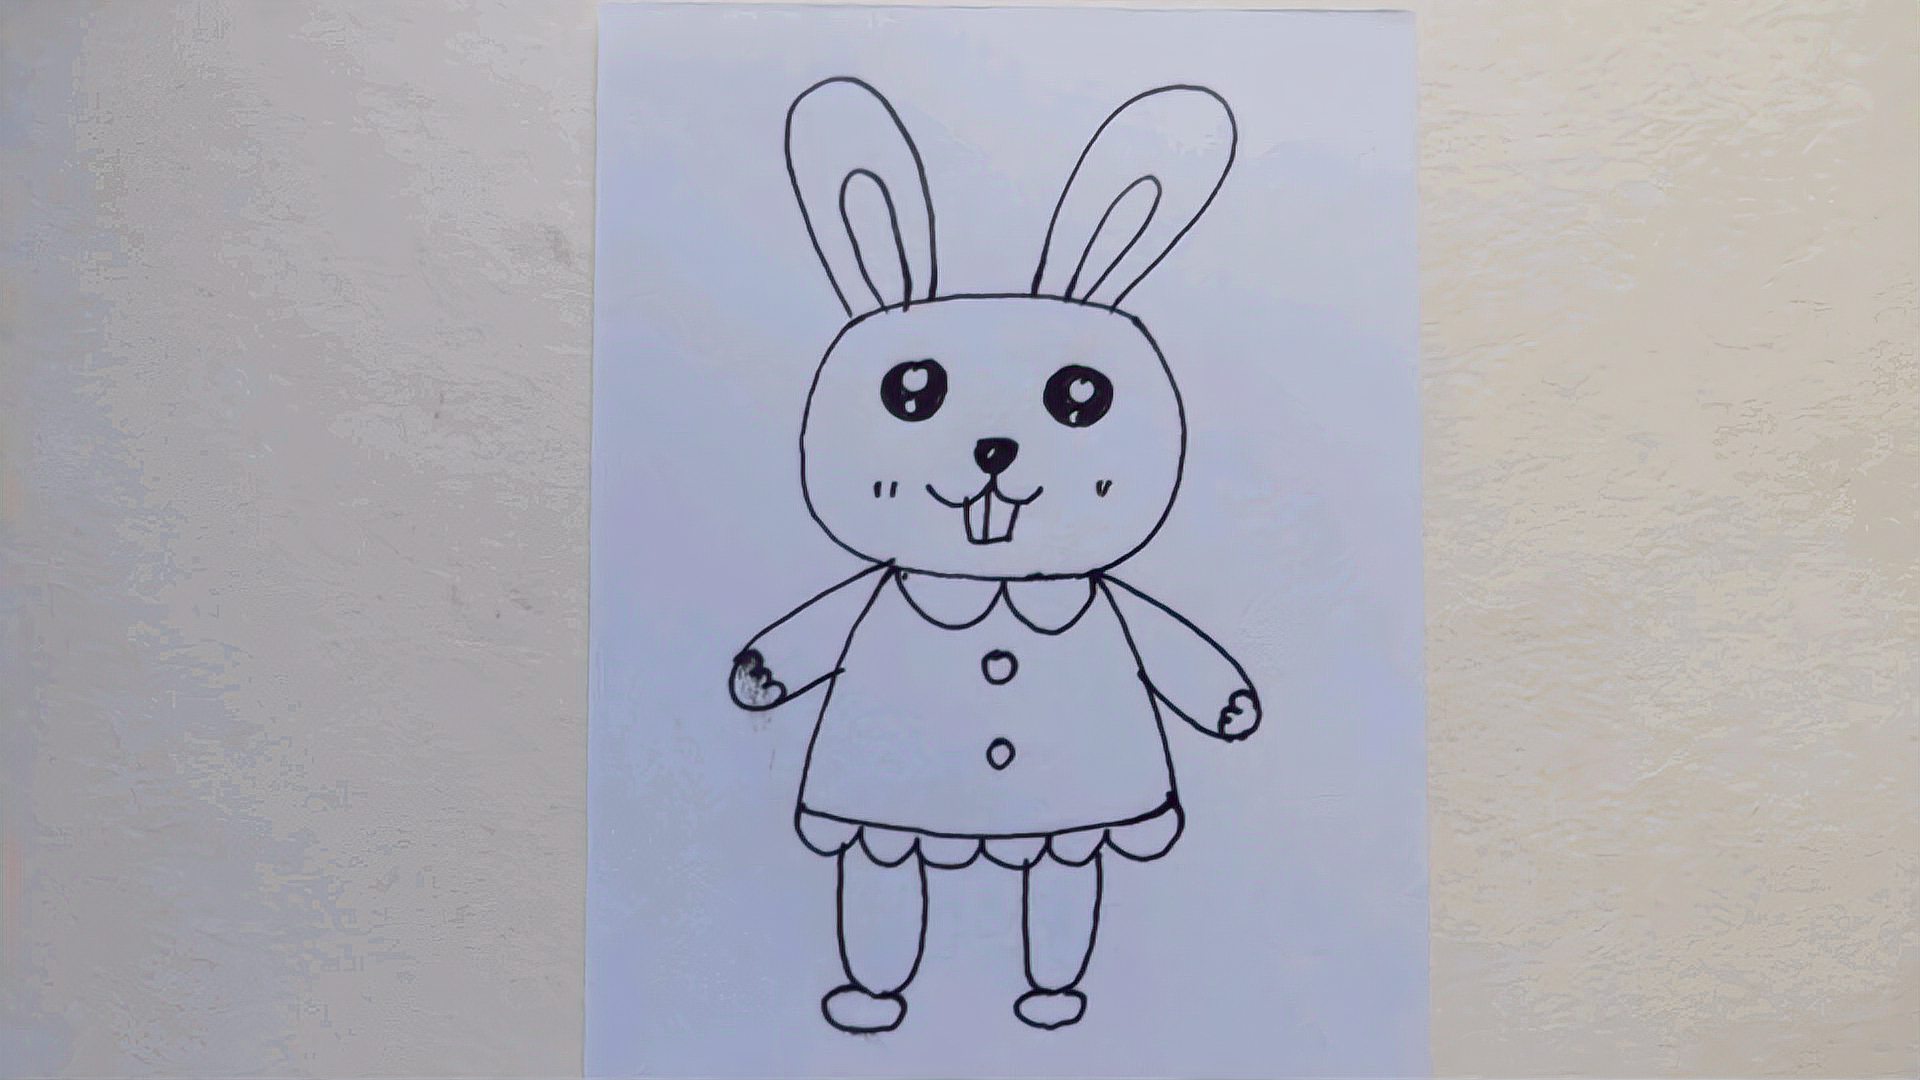 1站立的小兔子的画法  00:43  来源:秒懂百科-简笔画兔子原来这么